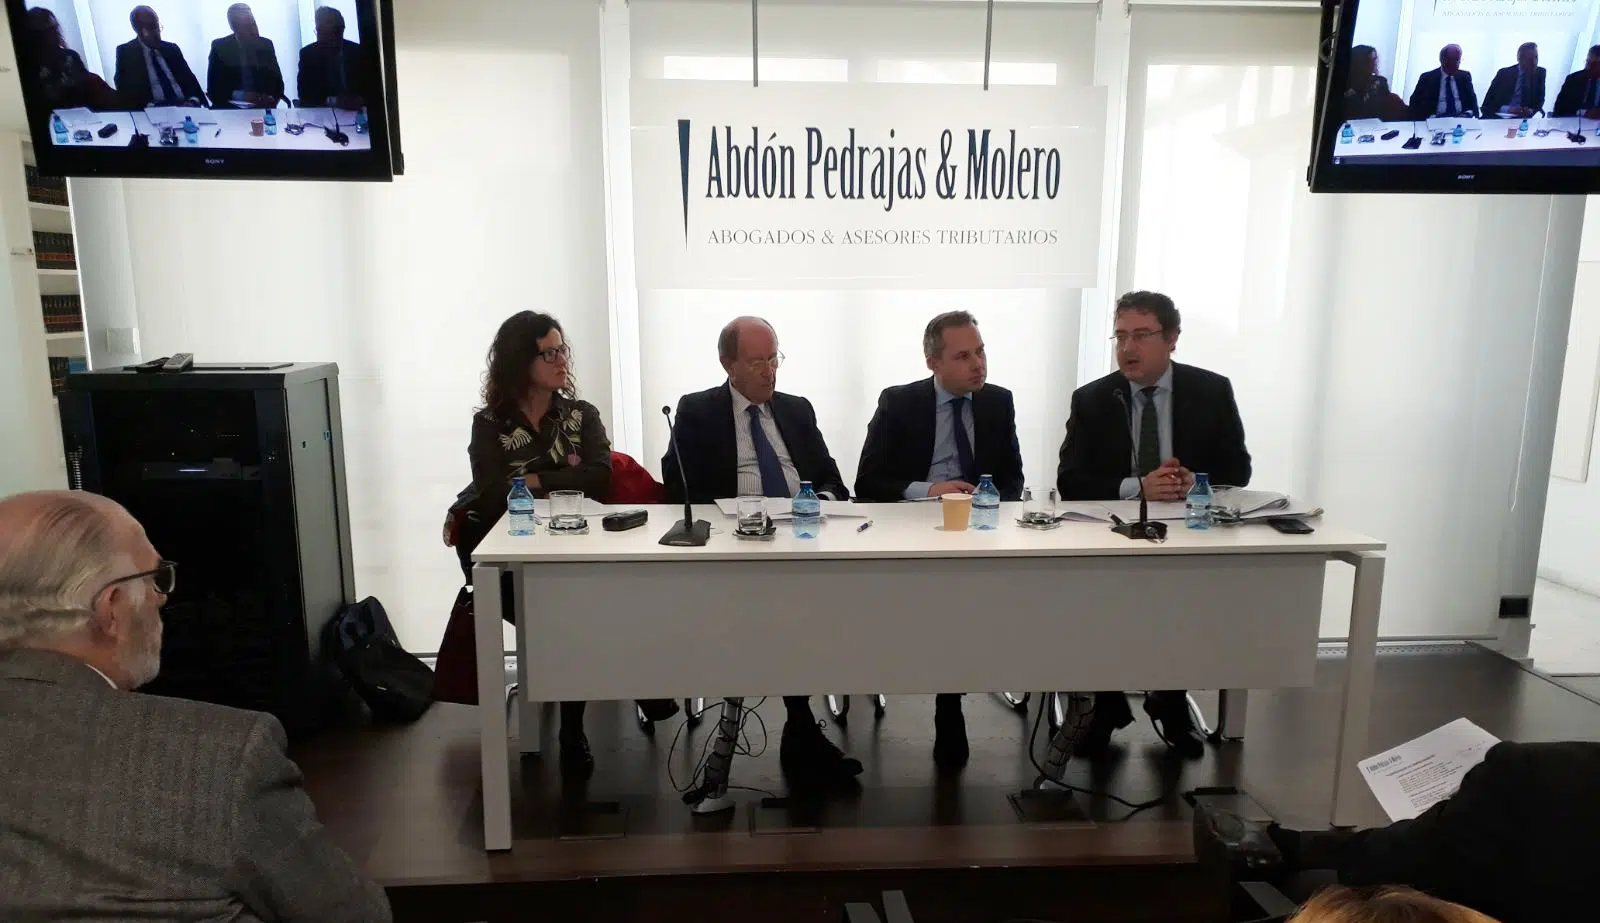 Preocupación entre los expertos sobre el registro de jornada y la inseguridad jurídica de la sentencia Diego Porras